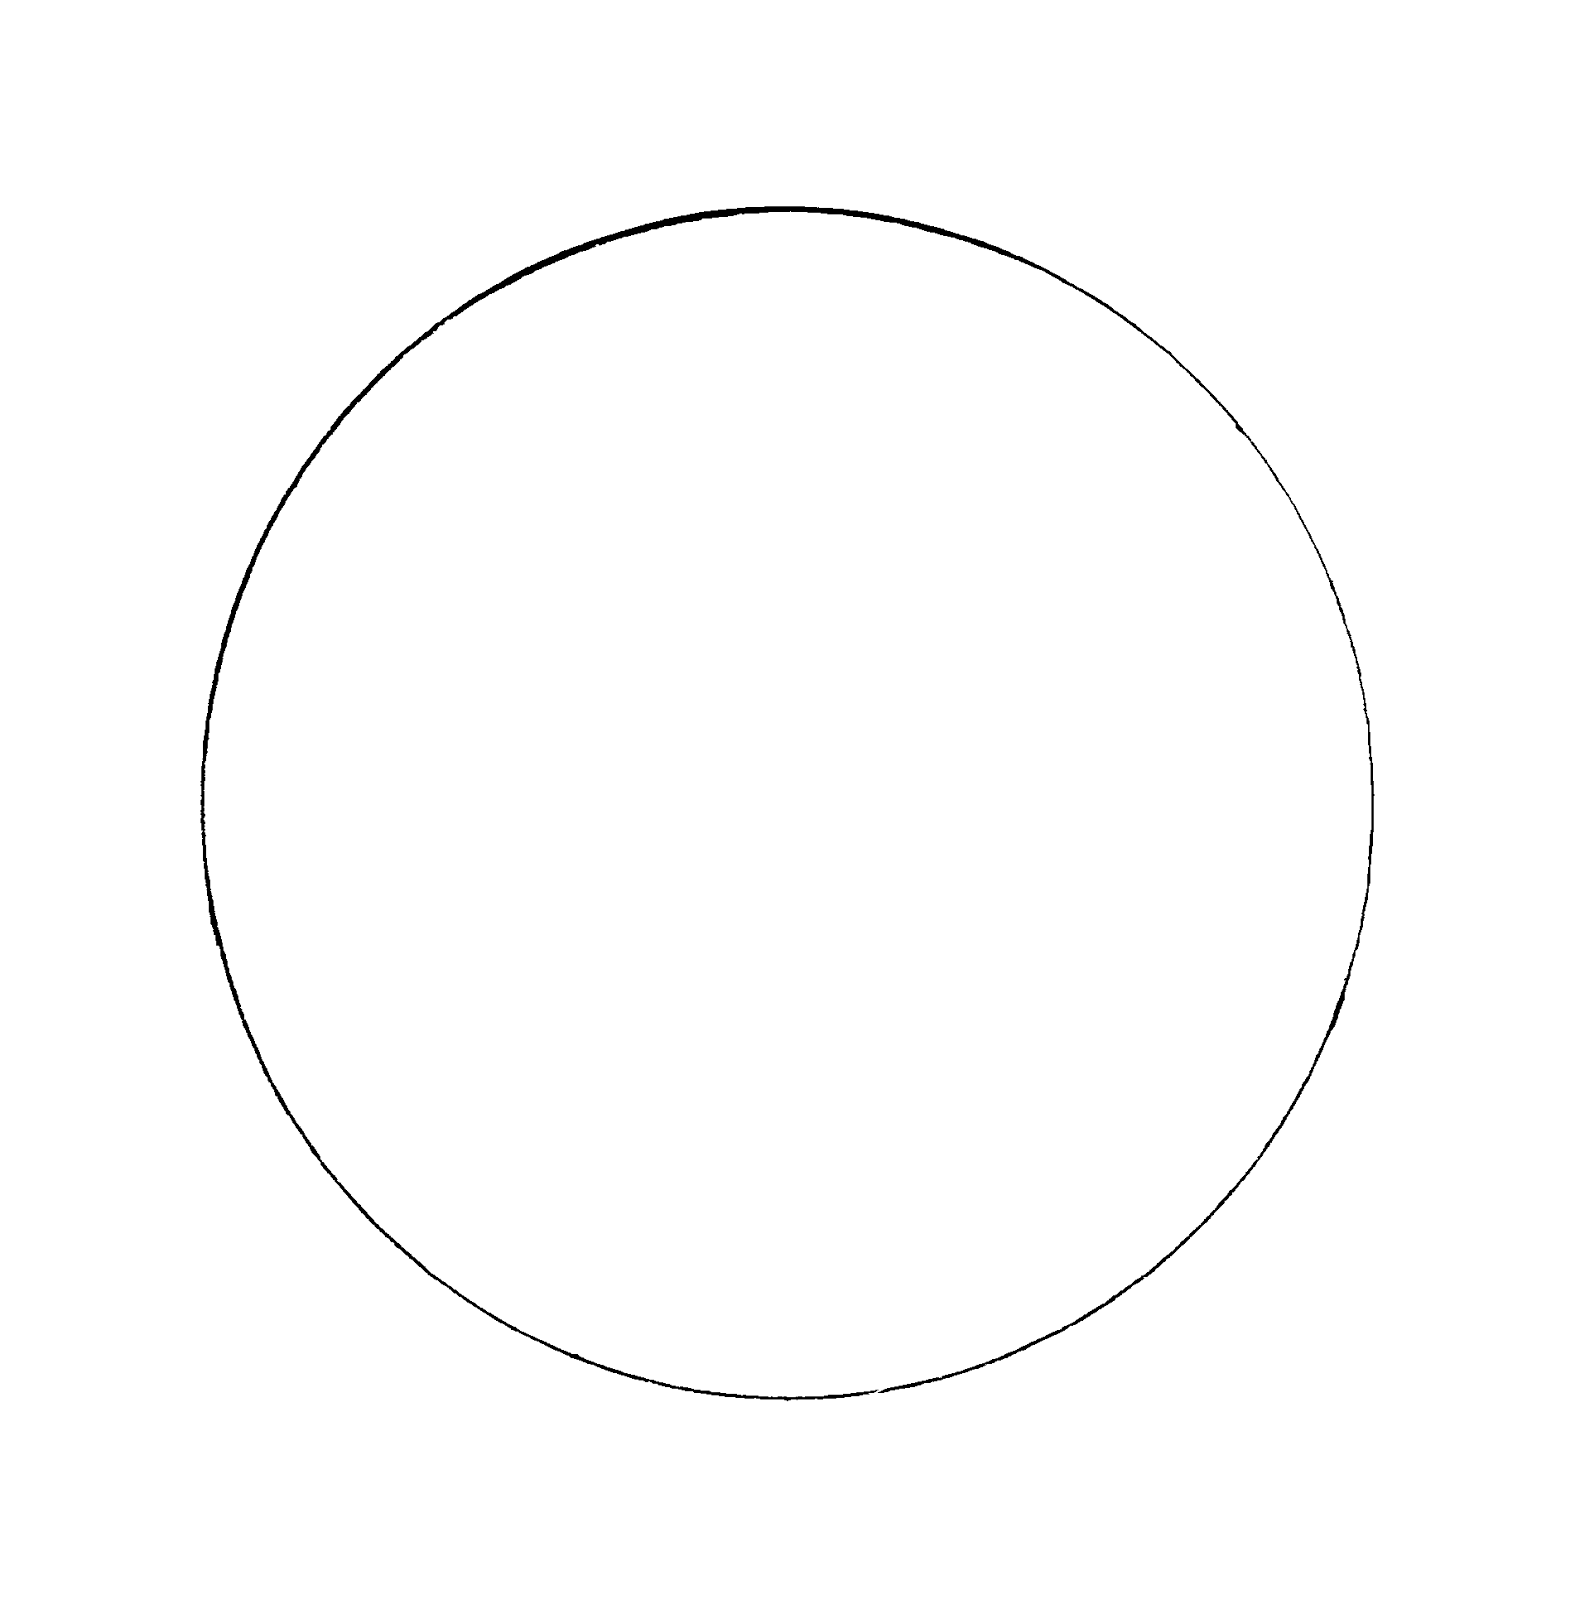 Трафарет круги. Шаблон "круги". Круг для раскрашивания. Белая окружность на прозрачном фоне.